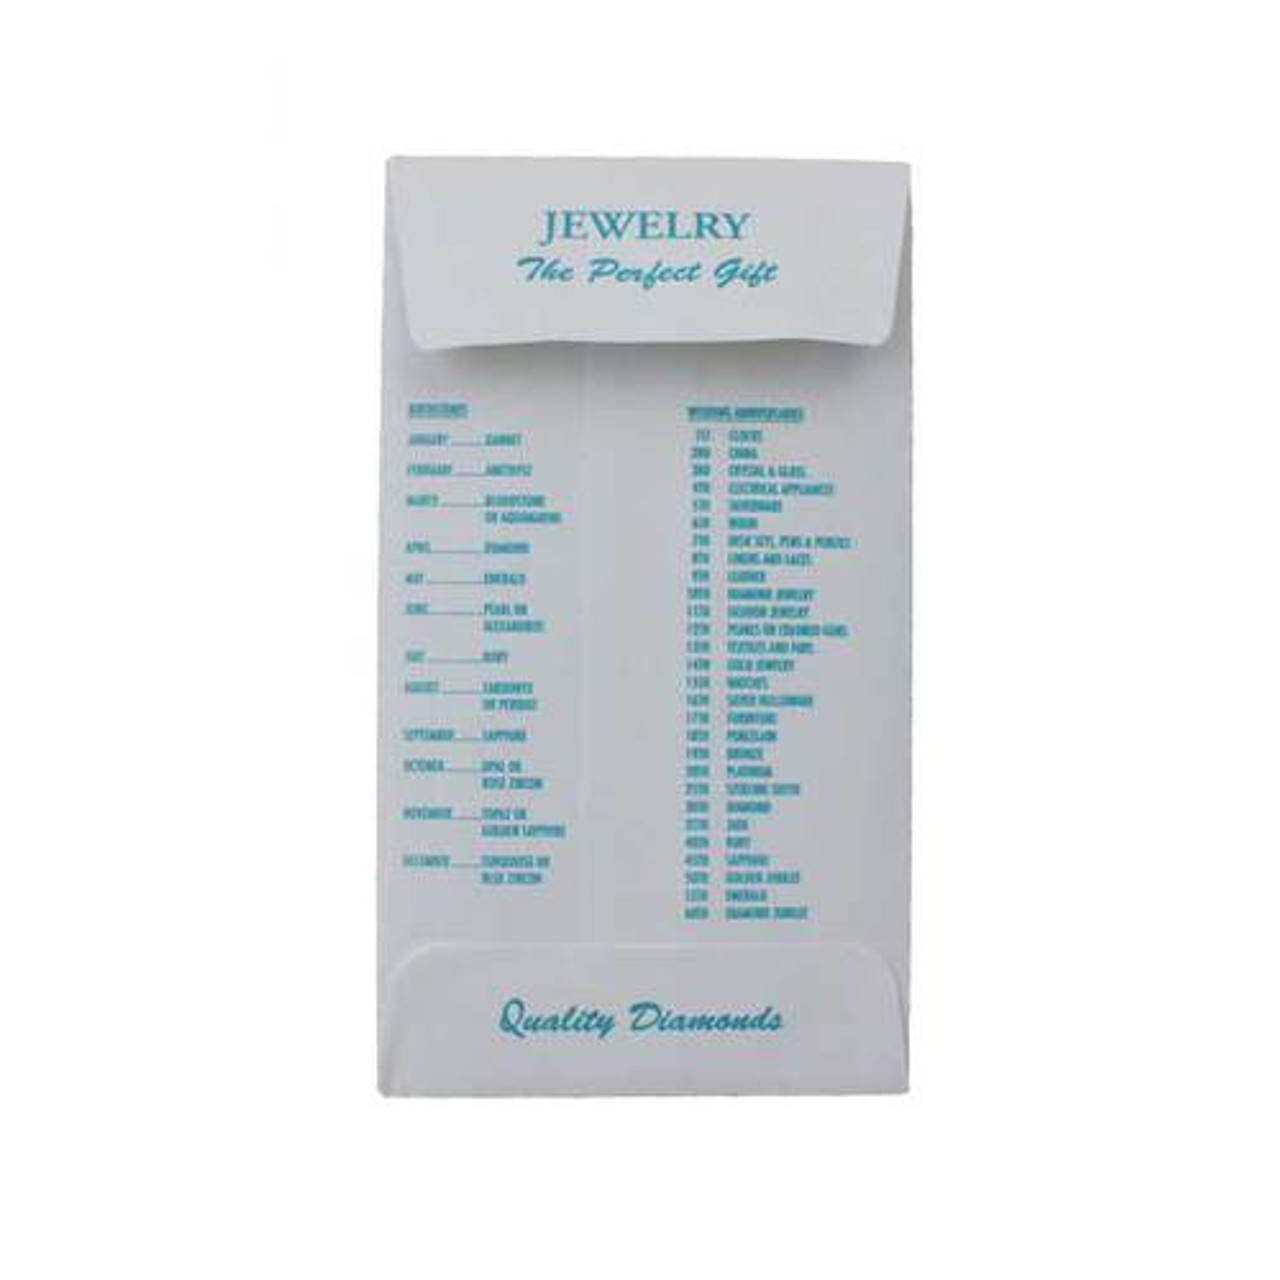 Jewelry Repair Envelope Organizer Holder for 3 x 5 inch Envelopes Small | Esslinger